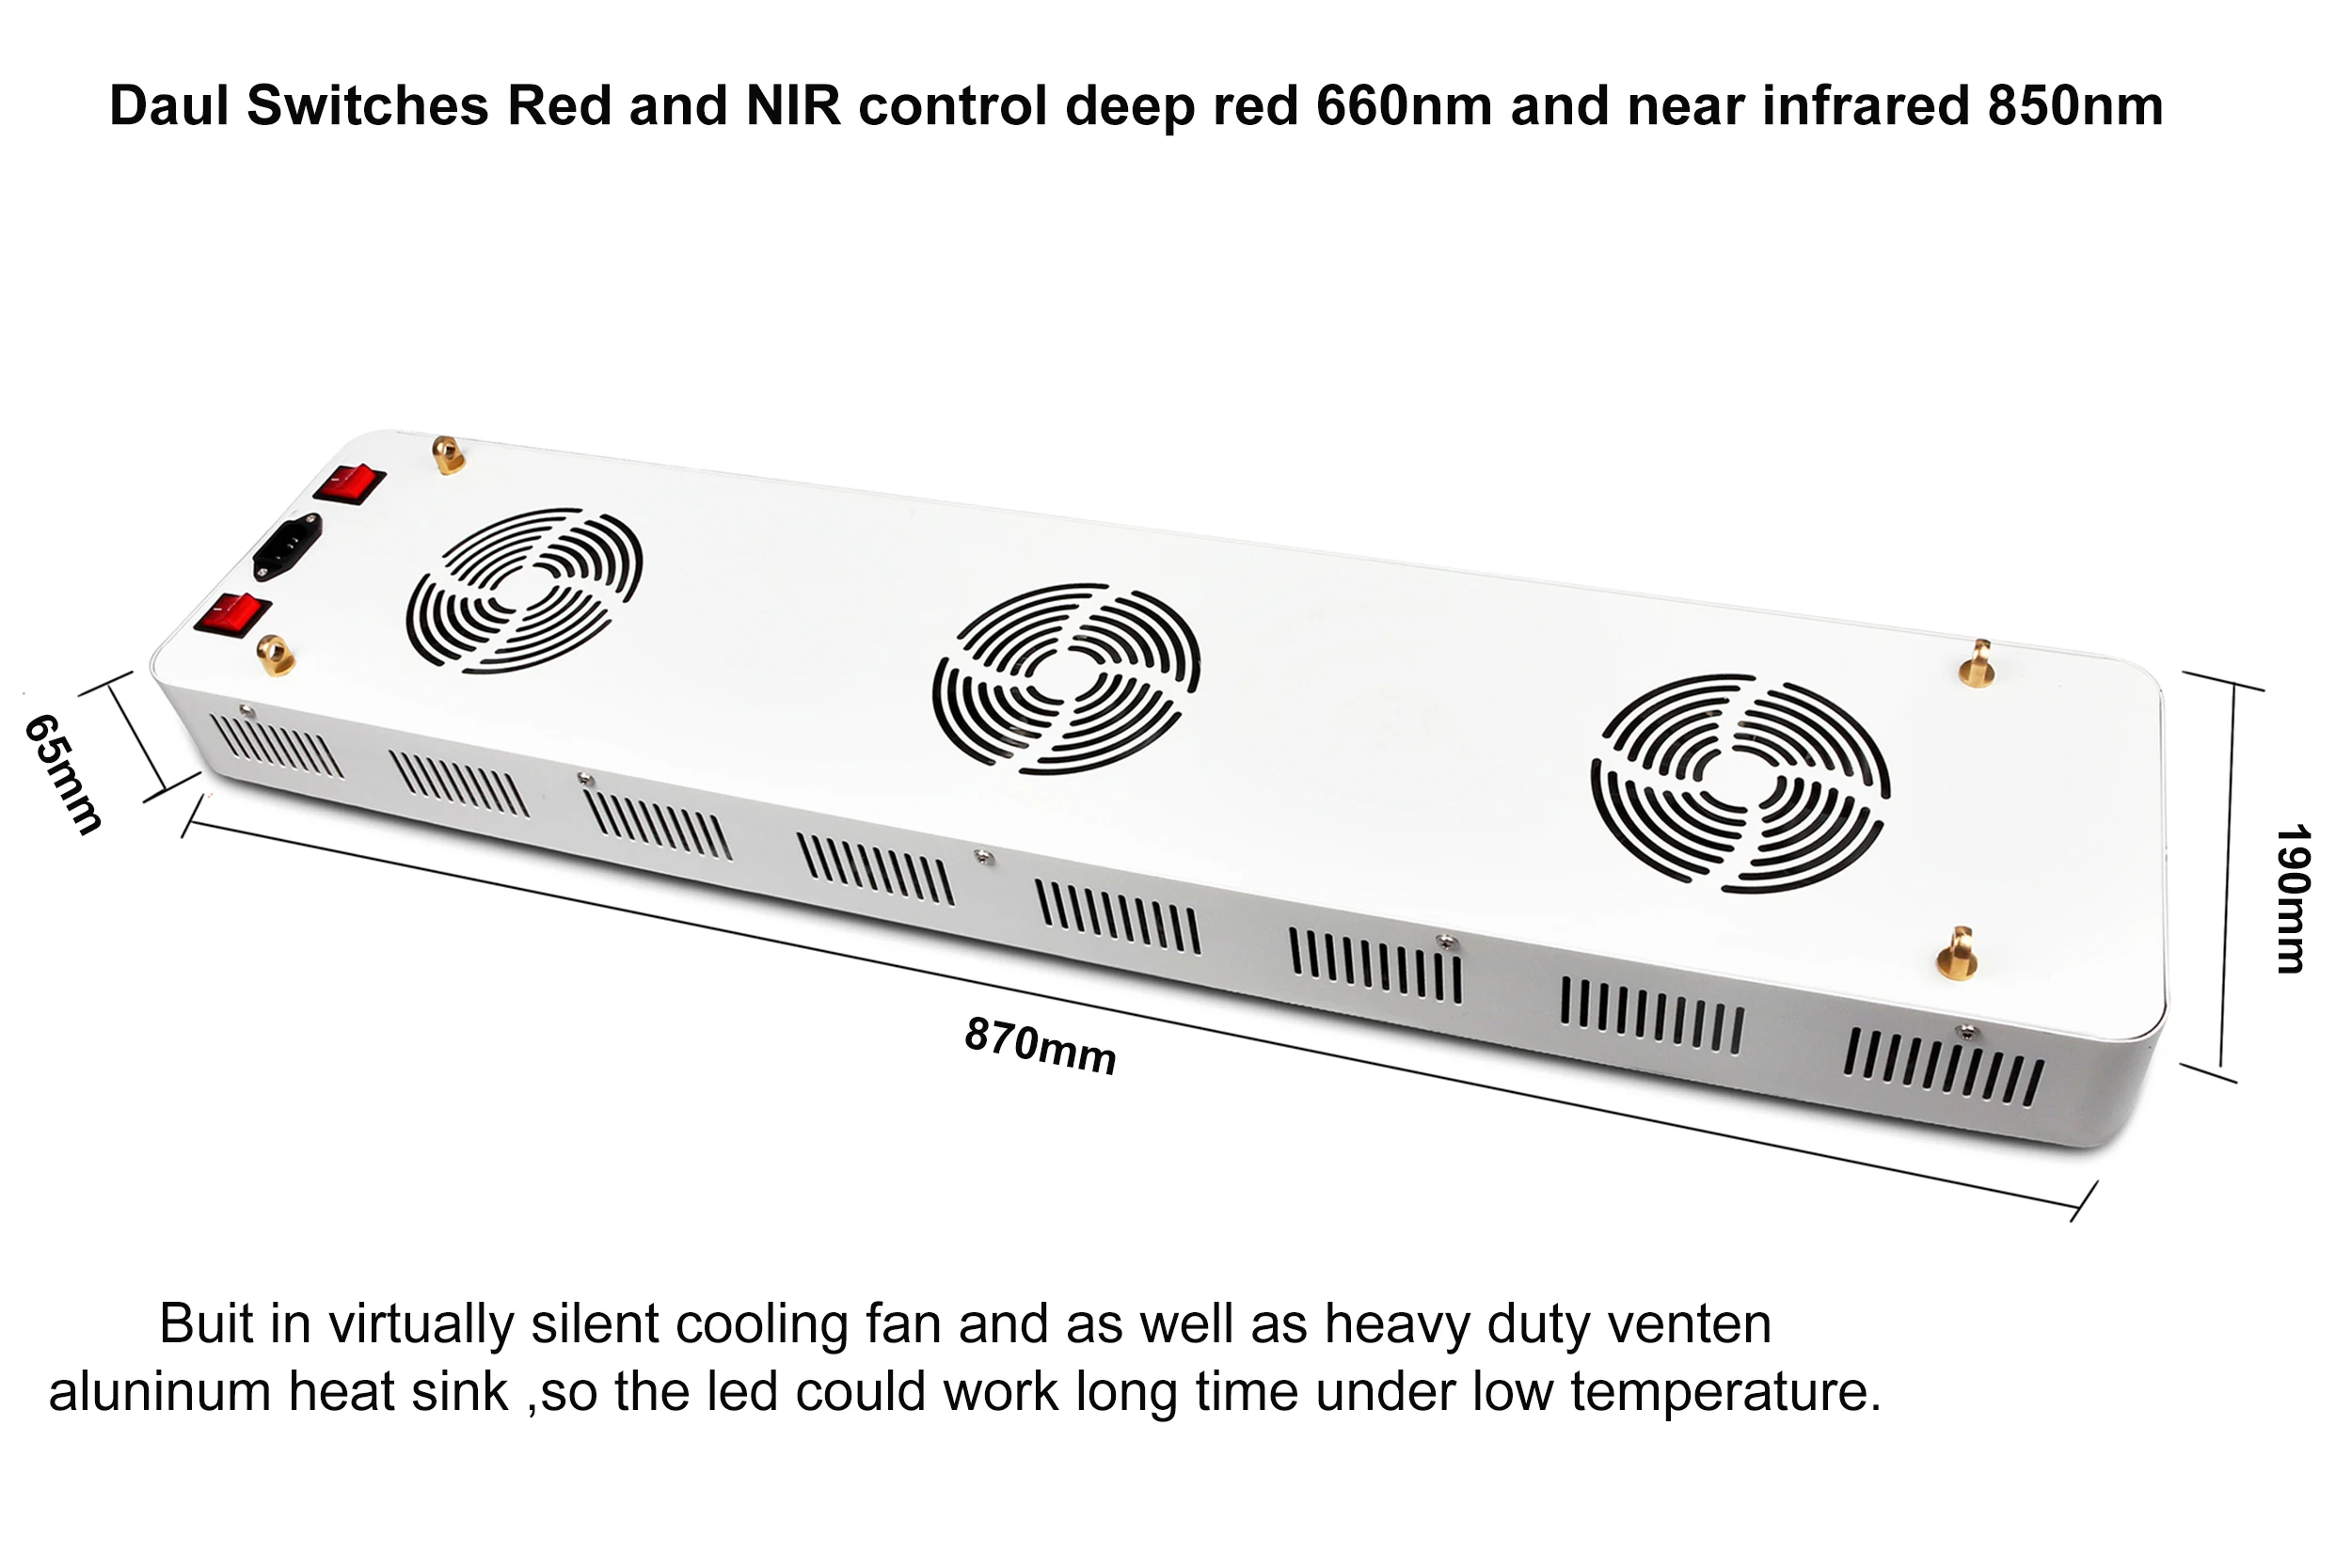 SGROW Factory 900W Красная инфракрасная световая терапия нм PM900 красная светодиодная световая терапевтическая панель для облегчения боли